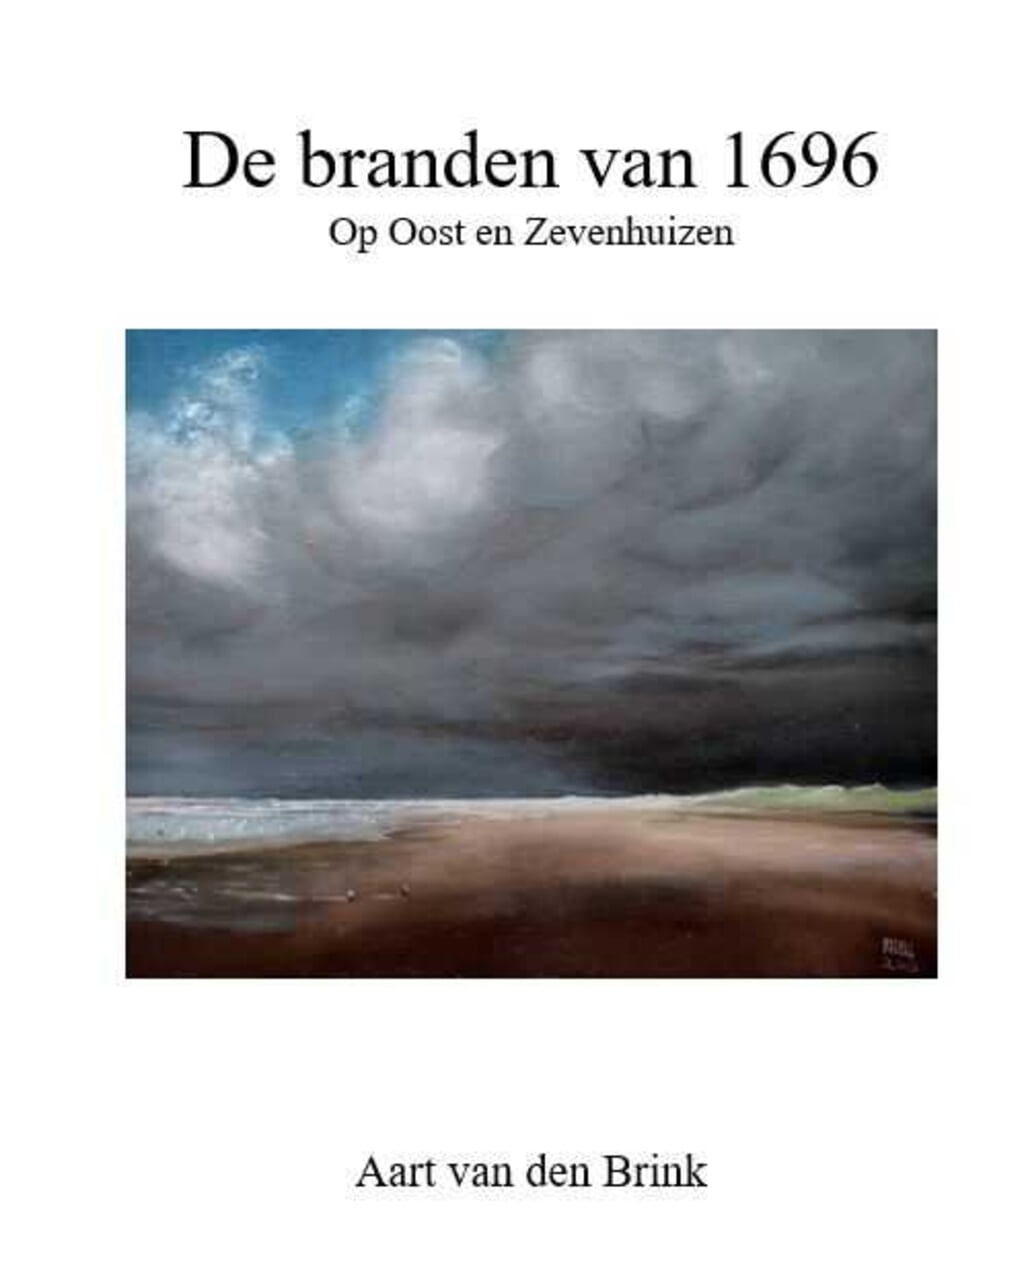 Uitsnede van de omslag van "De Branden van 1696 op Oost en Zevenhuizen". 